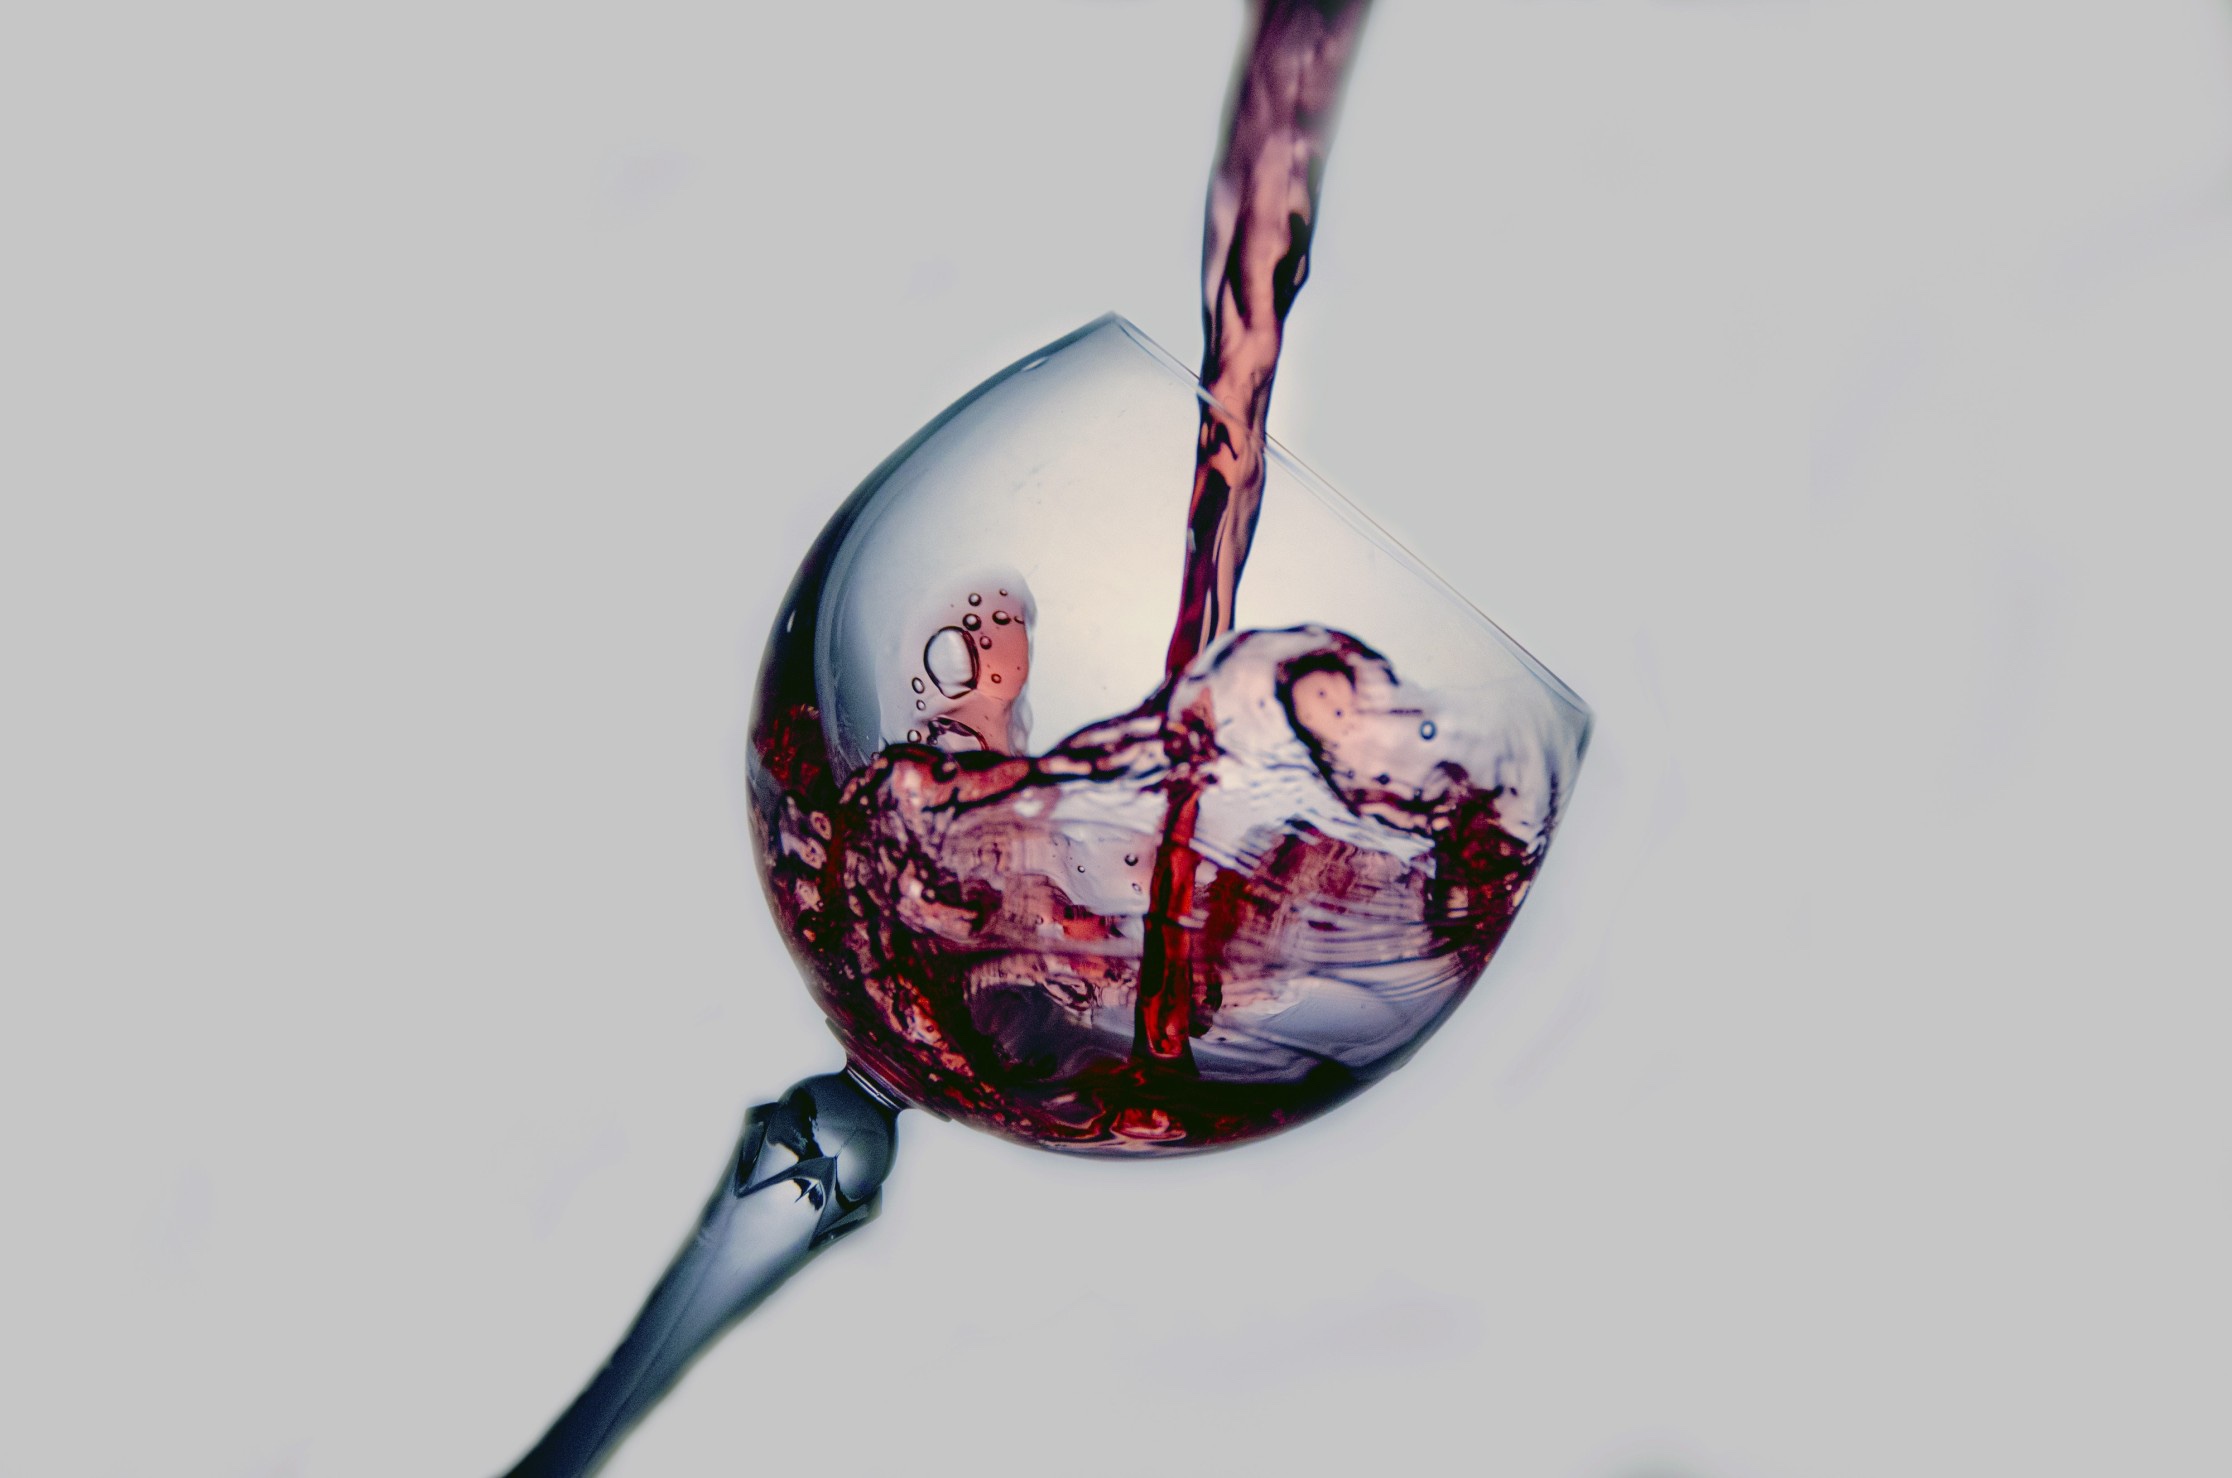 Cata de los mejores vinos: Apreciando aromas y sabores únicos